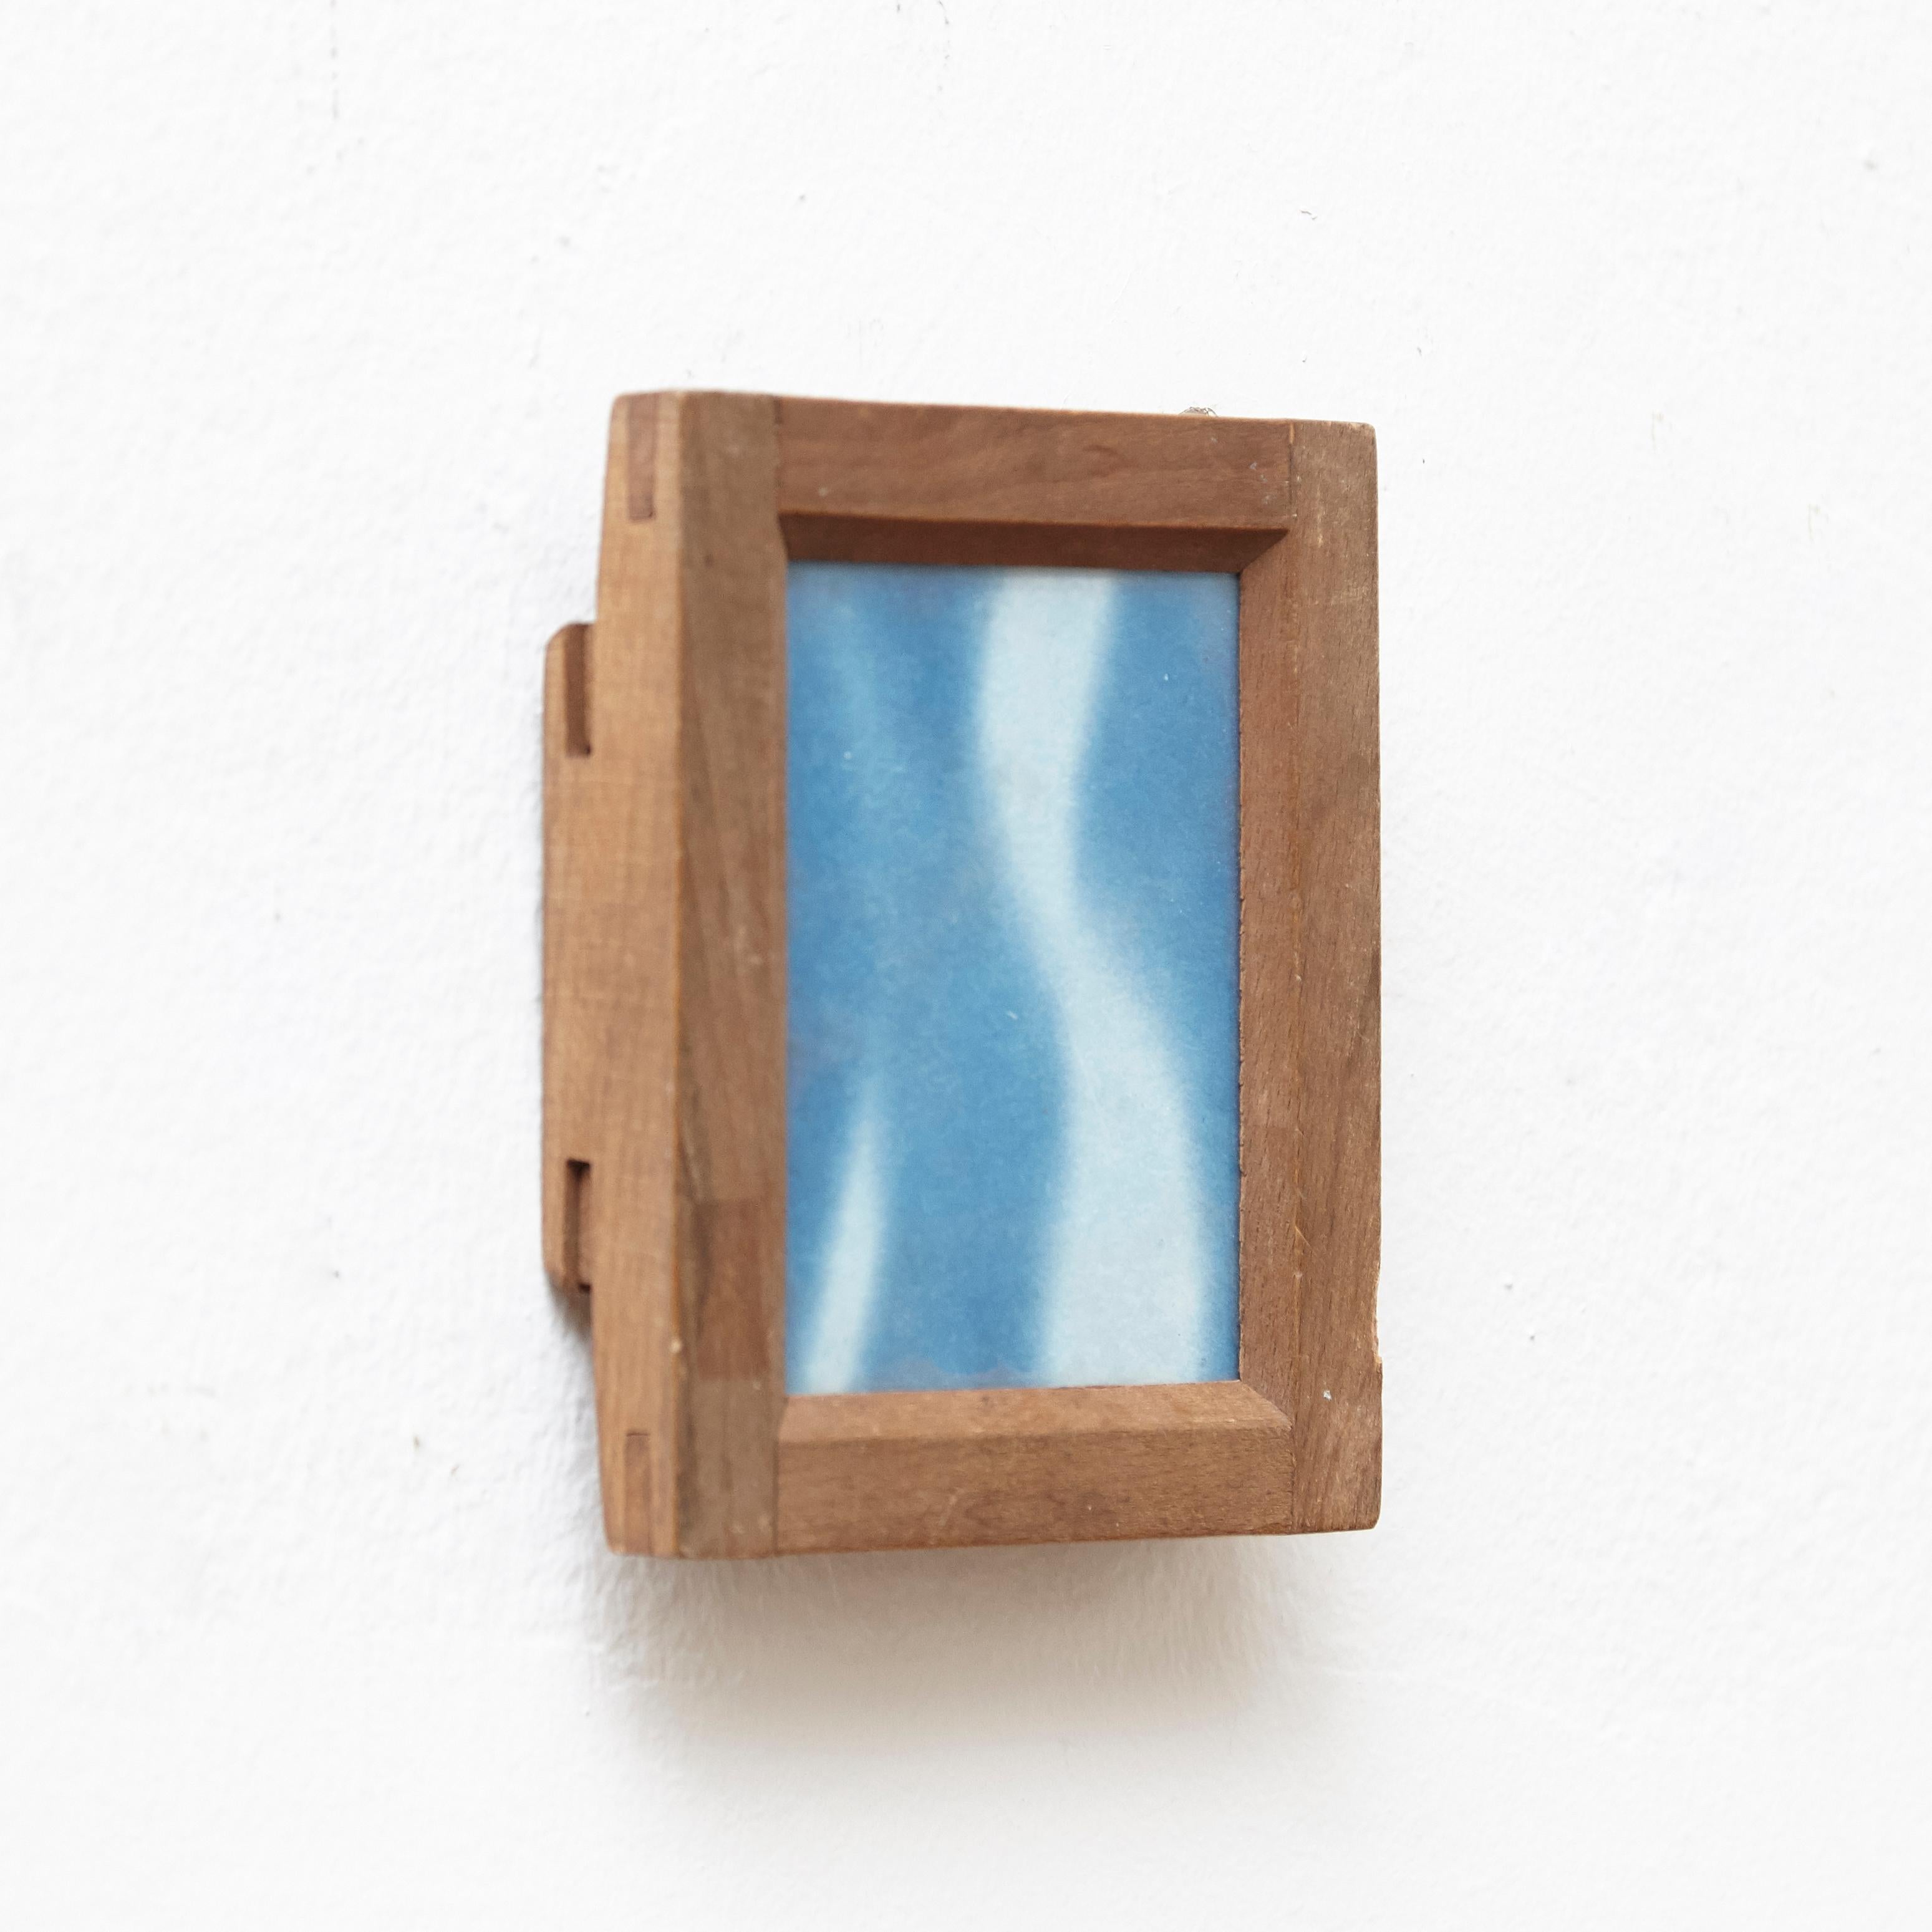 Cyanotype abstrait contemporain réalisé par Adrian, 2017.

Photographie cyanotype bleue et blanche contemporaine d'Adrian sur un cadre en bois, 2017.
 